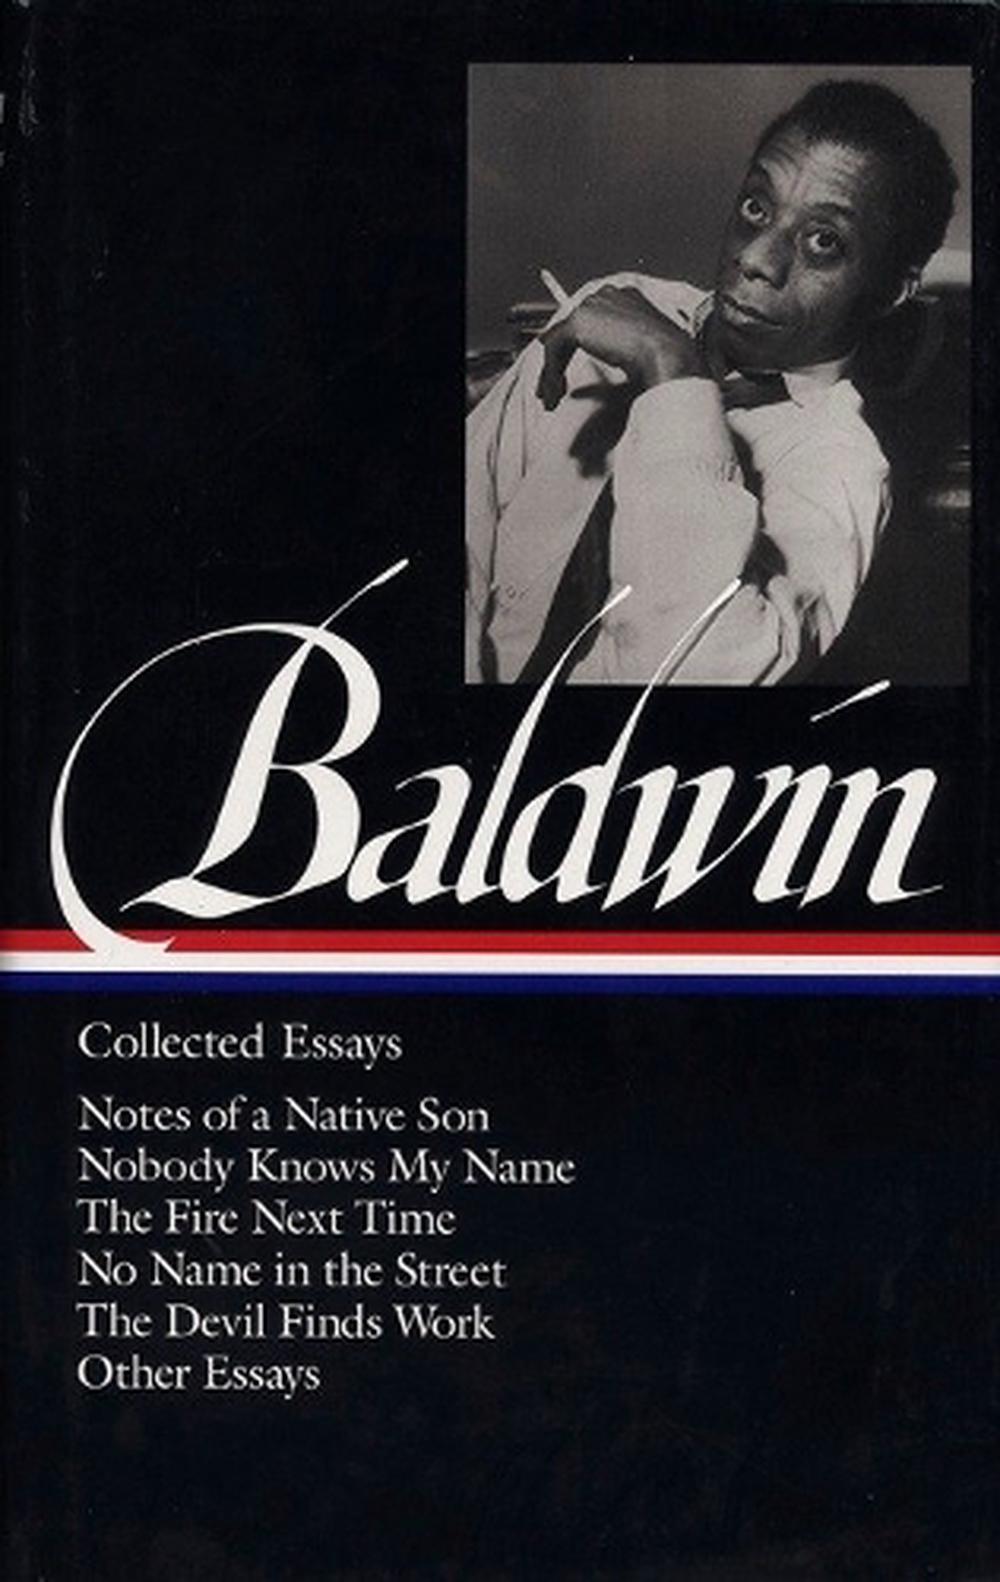 james baldwin collected essays ebook